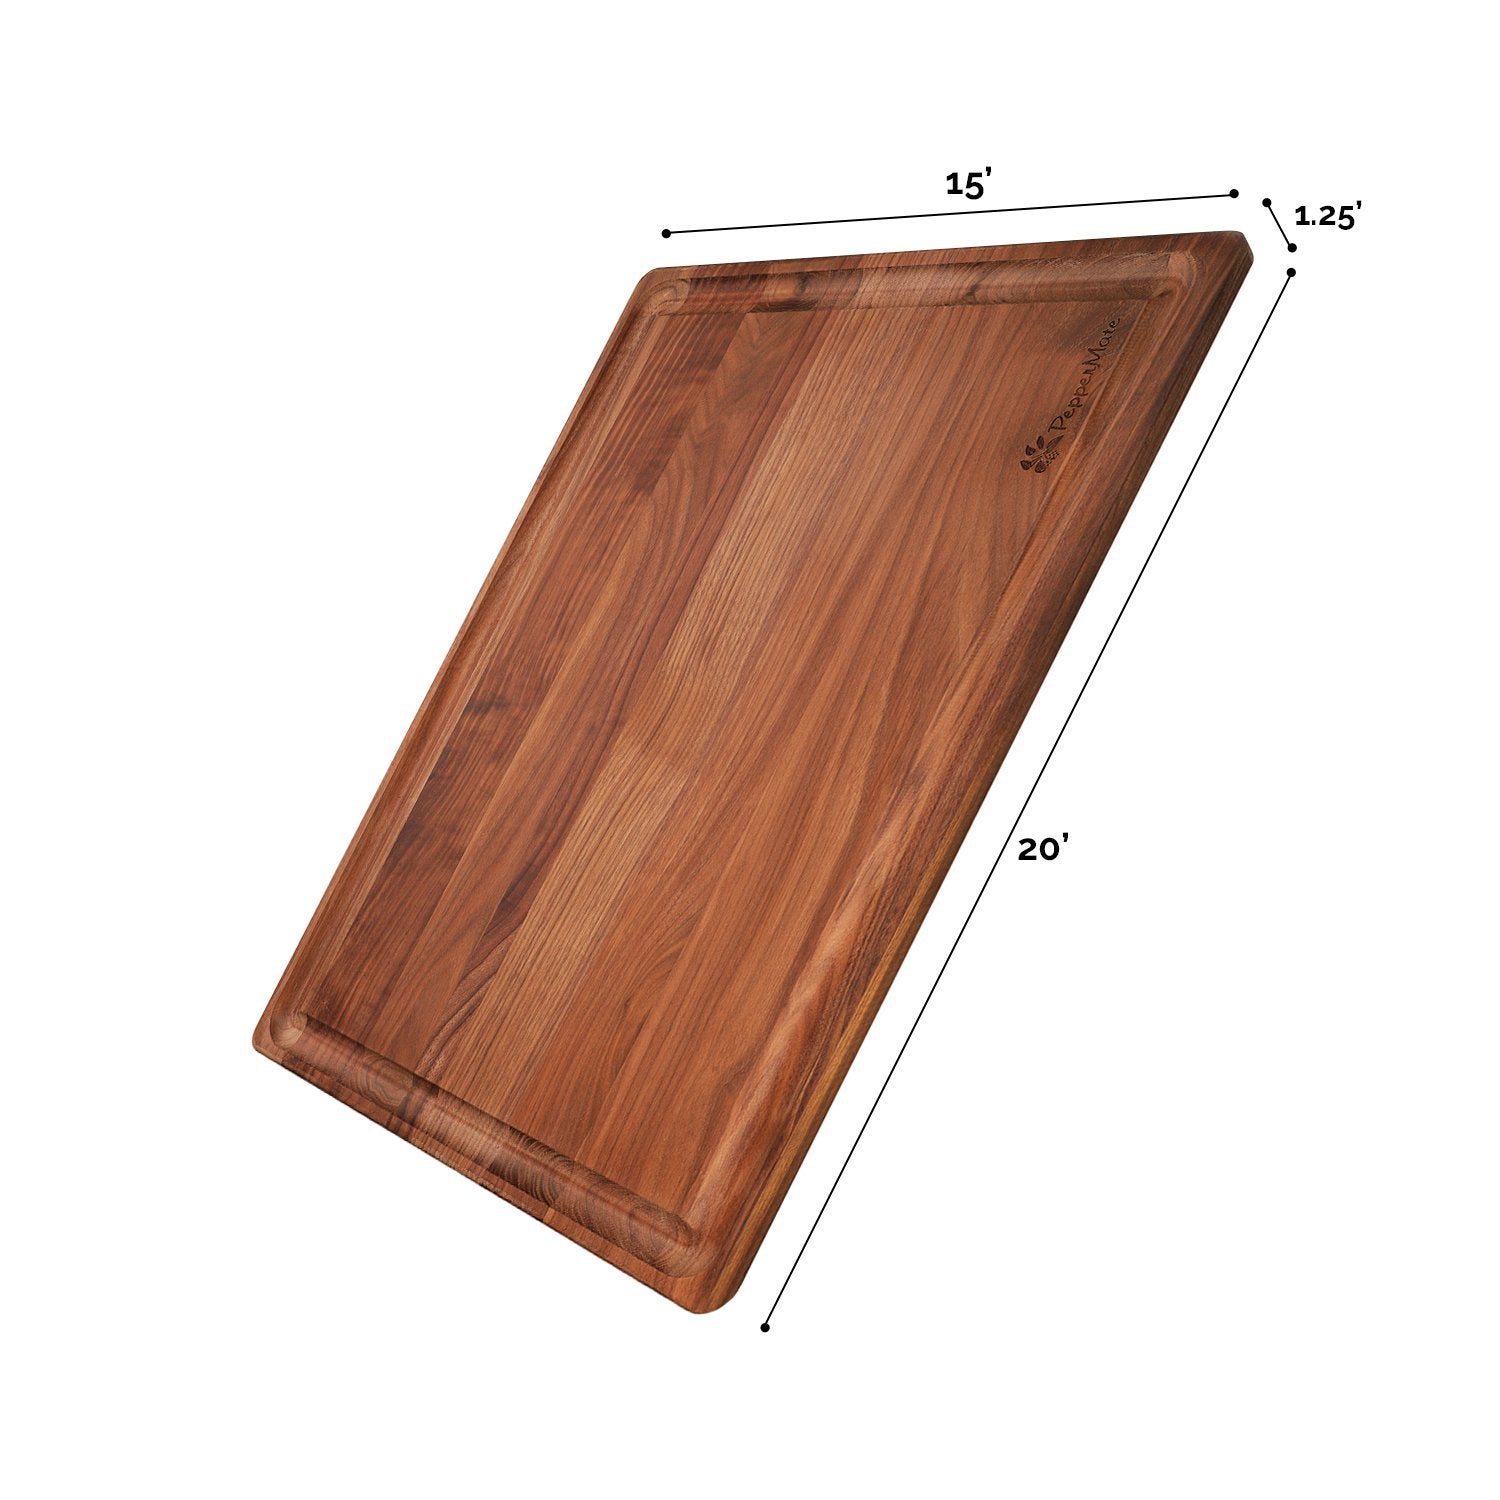 Walnut HardWood Cutting Board Large 20x15x1.25